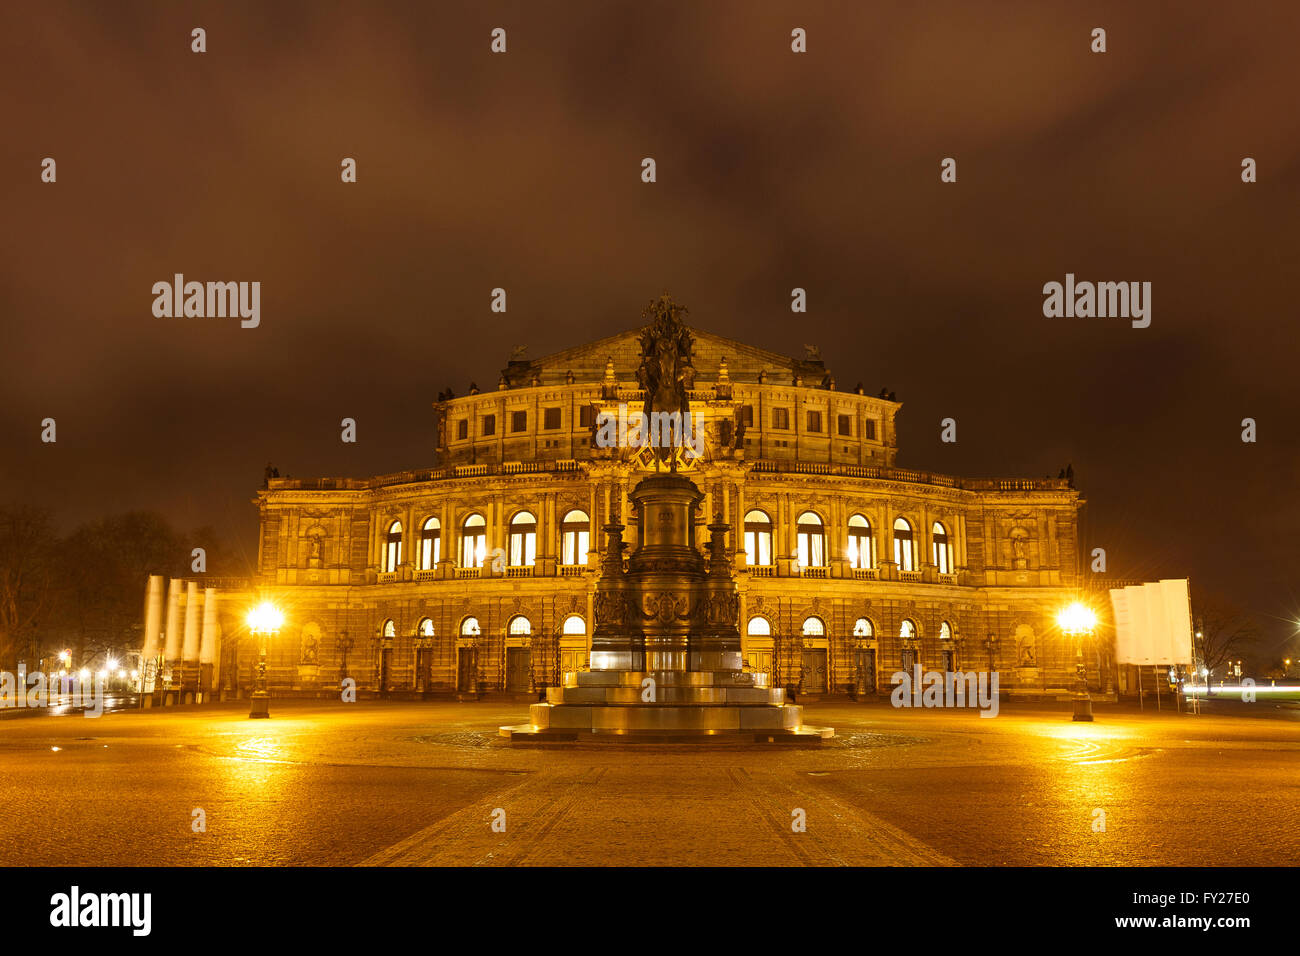 Monument du Roi Johann et Semper Opera Theatre de nuit à Dresde, Allemagne Banque D'Images